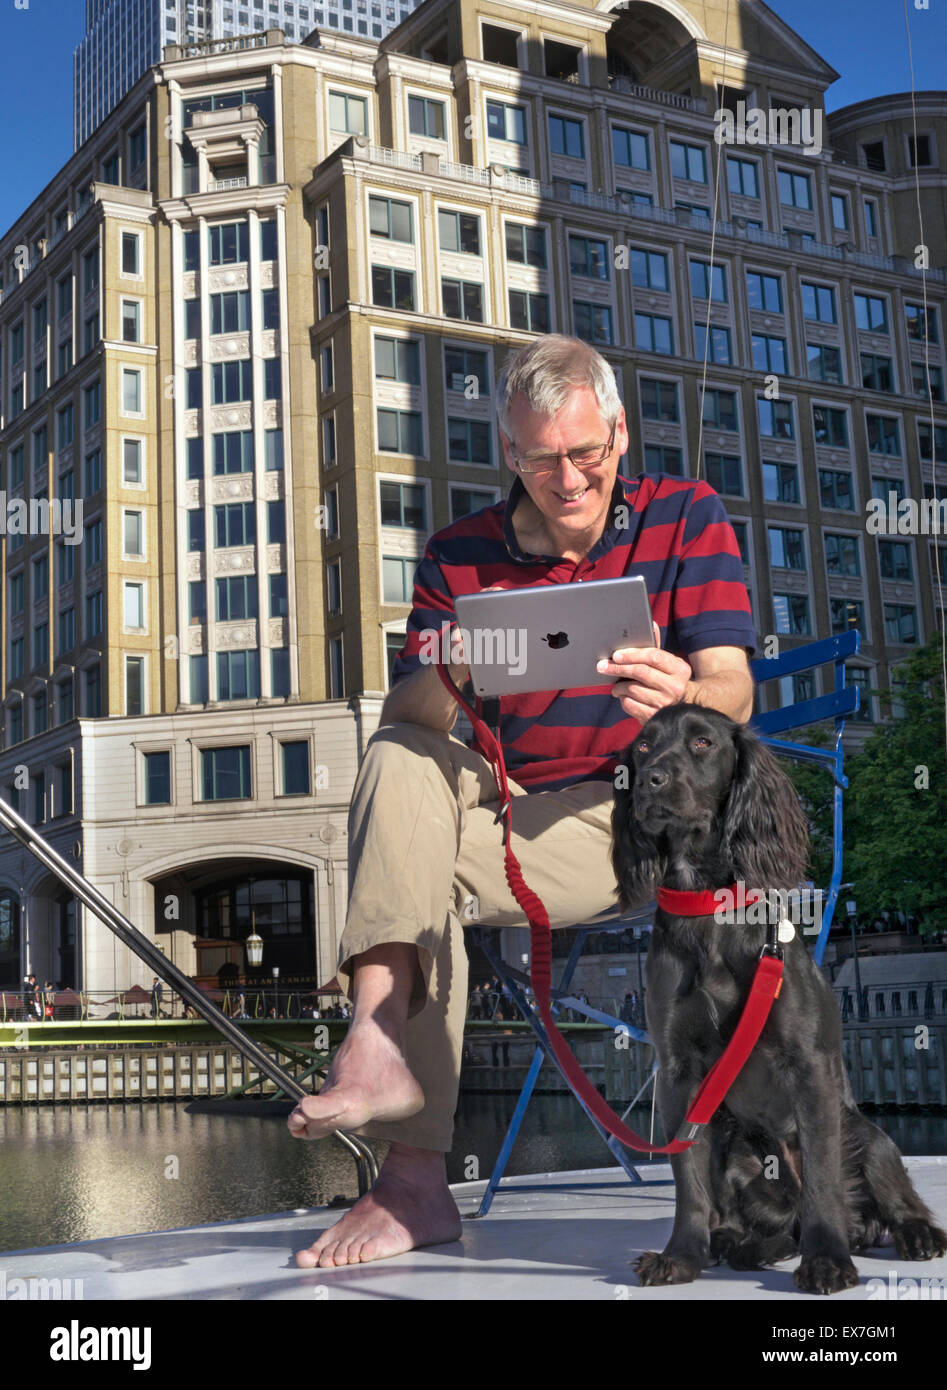 Relaxed mature homme avec chien assis dehors sur sa péniche en regardant son ordinateur tablette iPad air Canary Wharf Londres E14 Banque D'Images